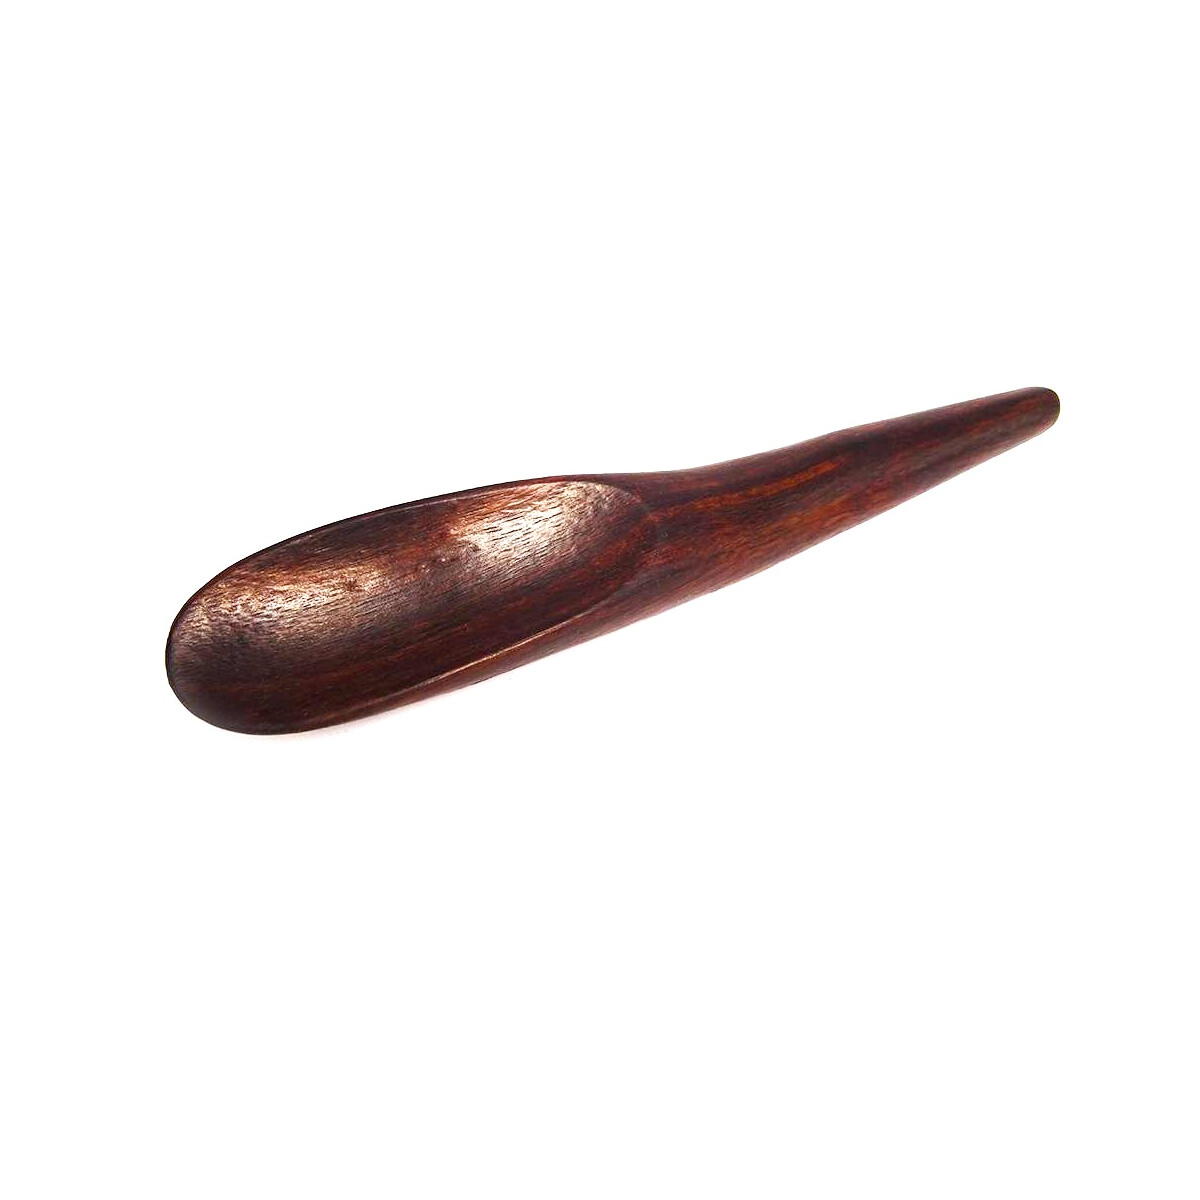 Massage aid made of wood, shape: Gua Sha spoon